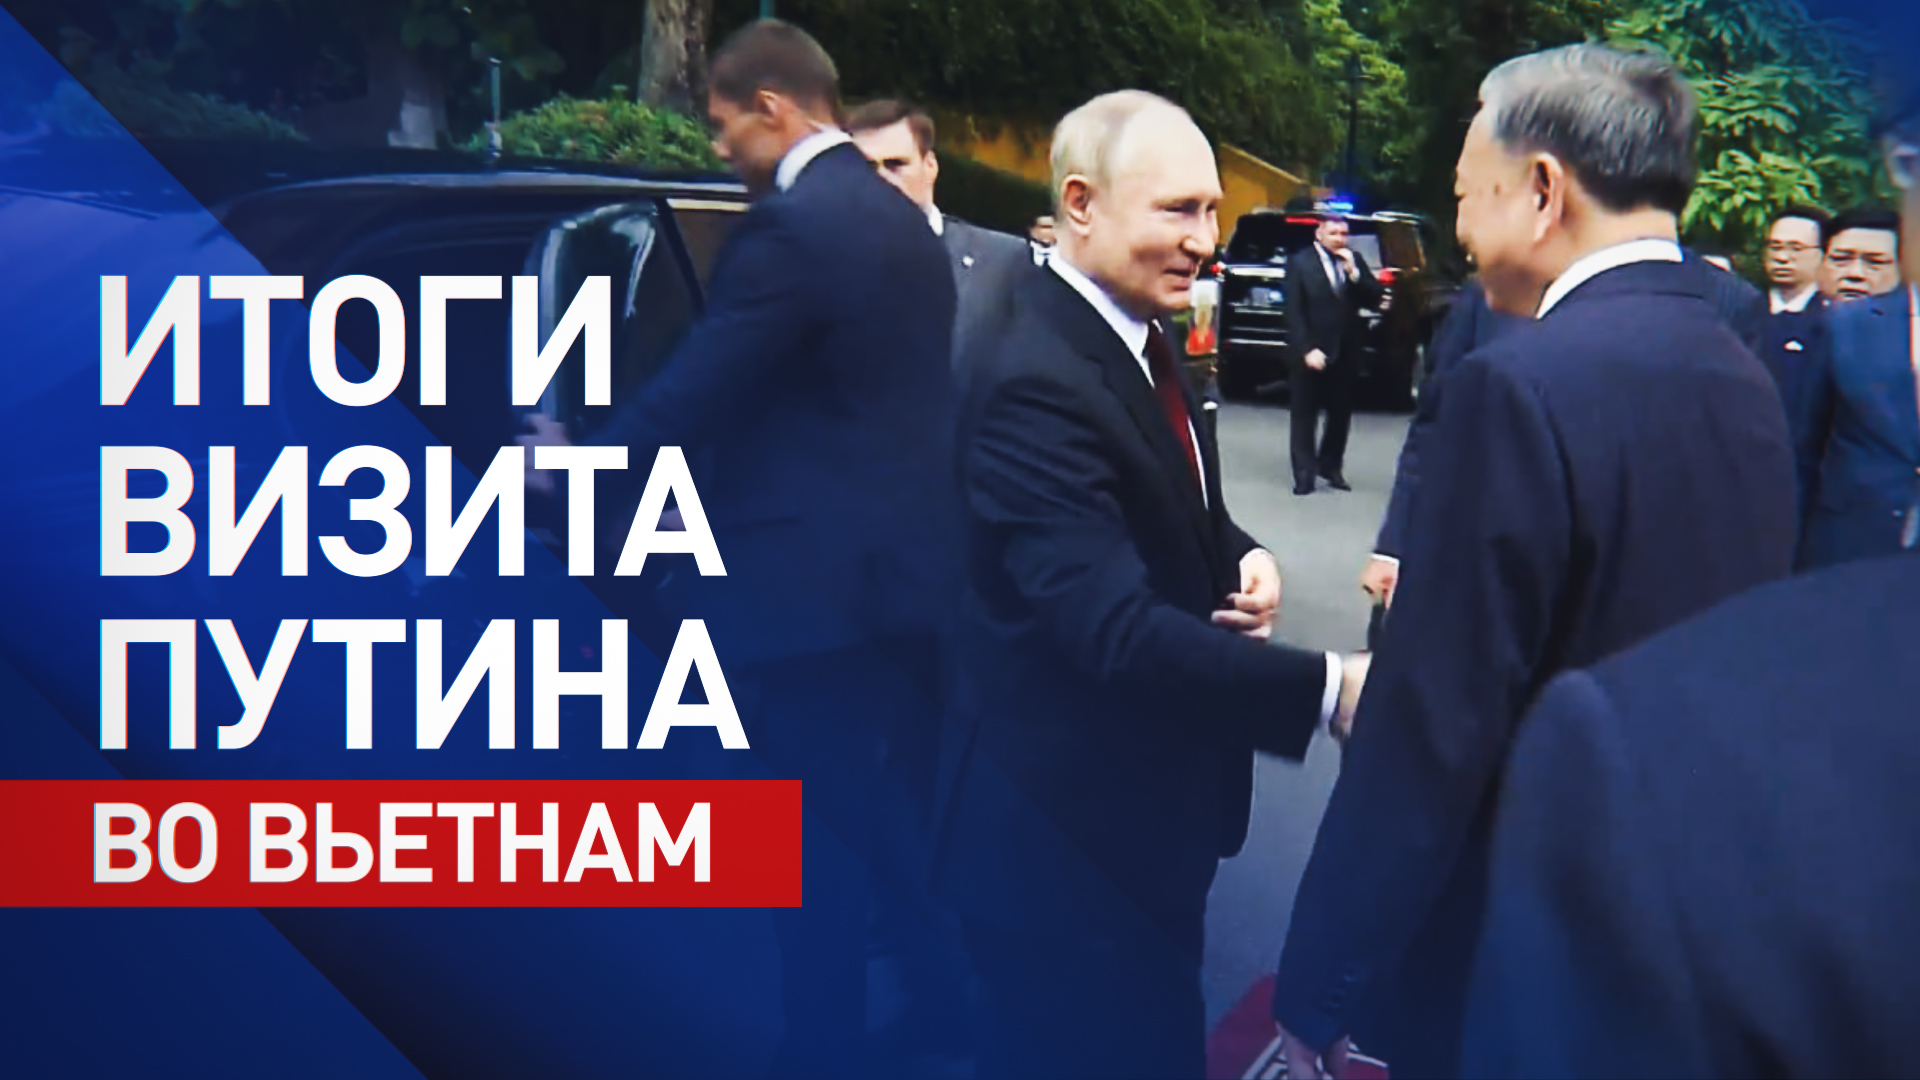 Путин посетил Вьетнам с государственным визитом. Главное